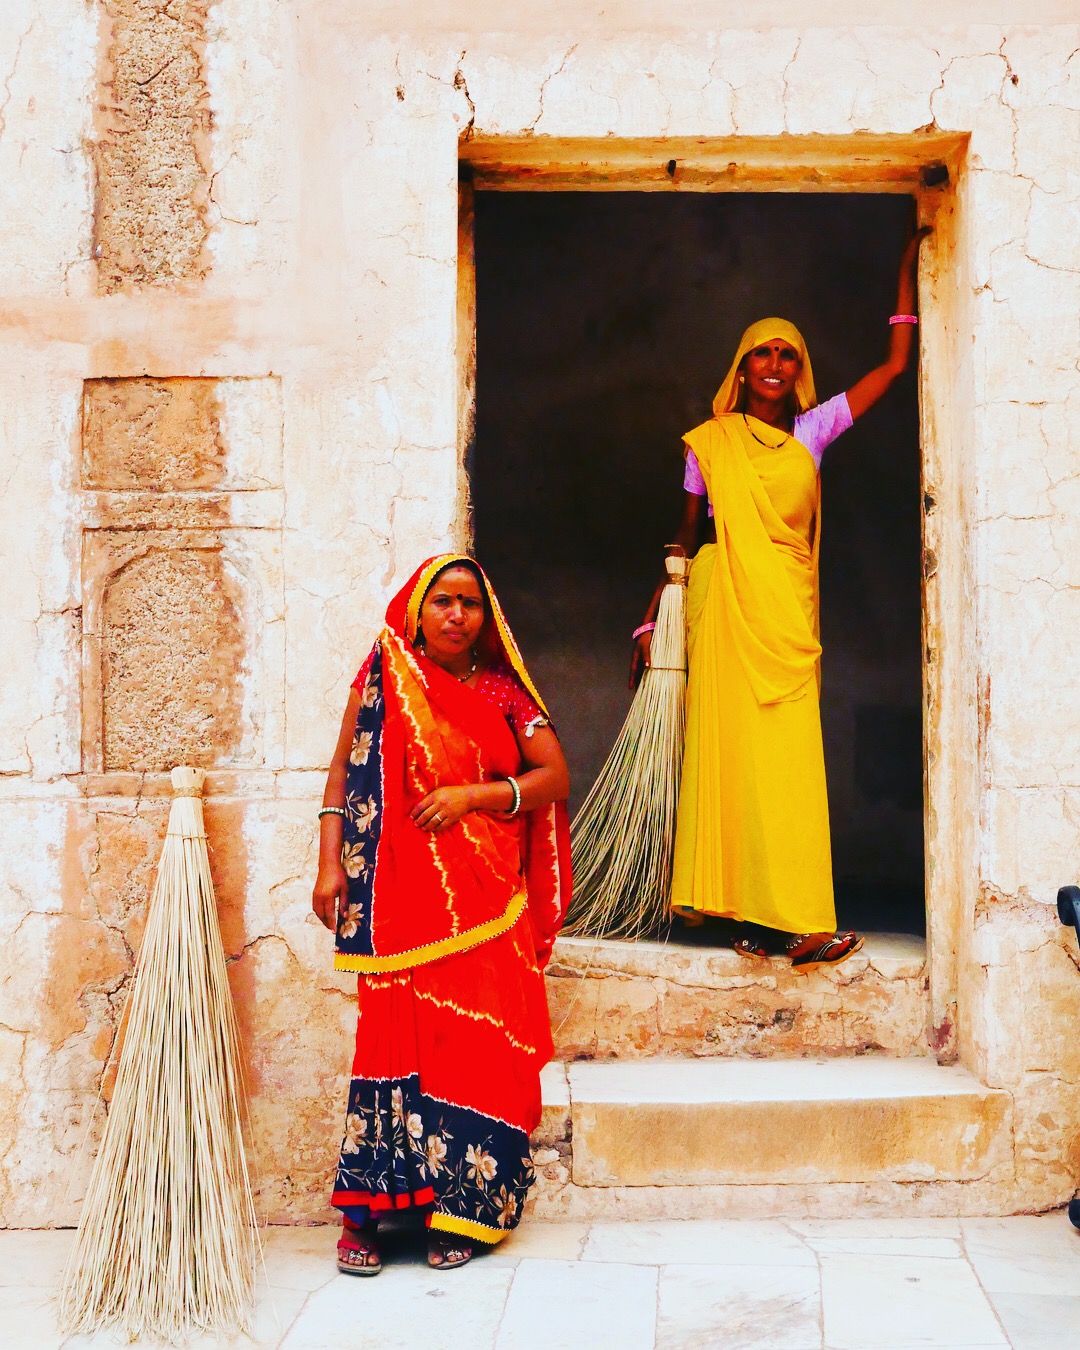 Rajasthani women - Jaipur India.